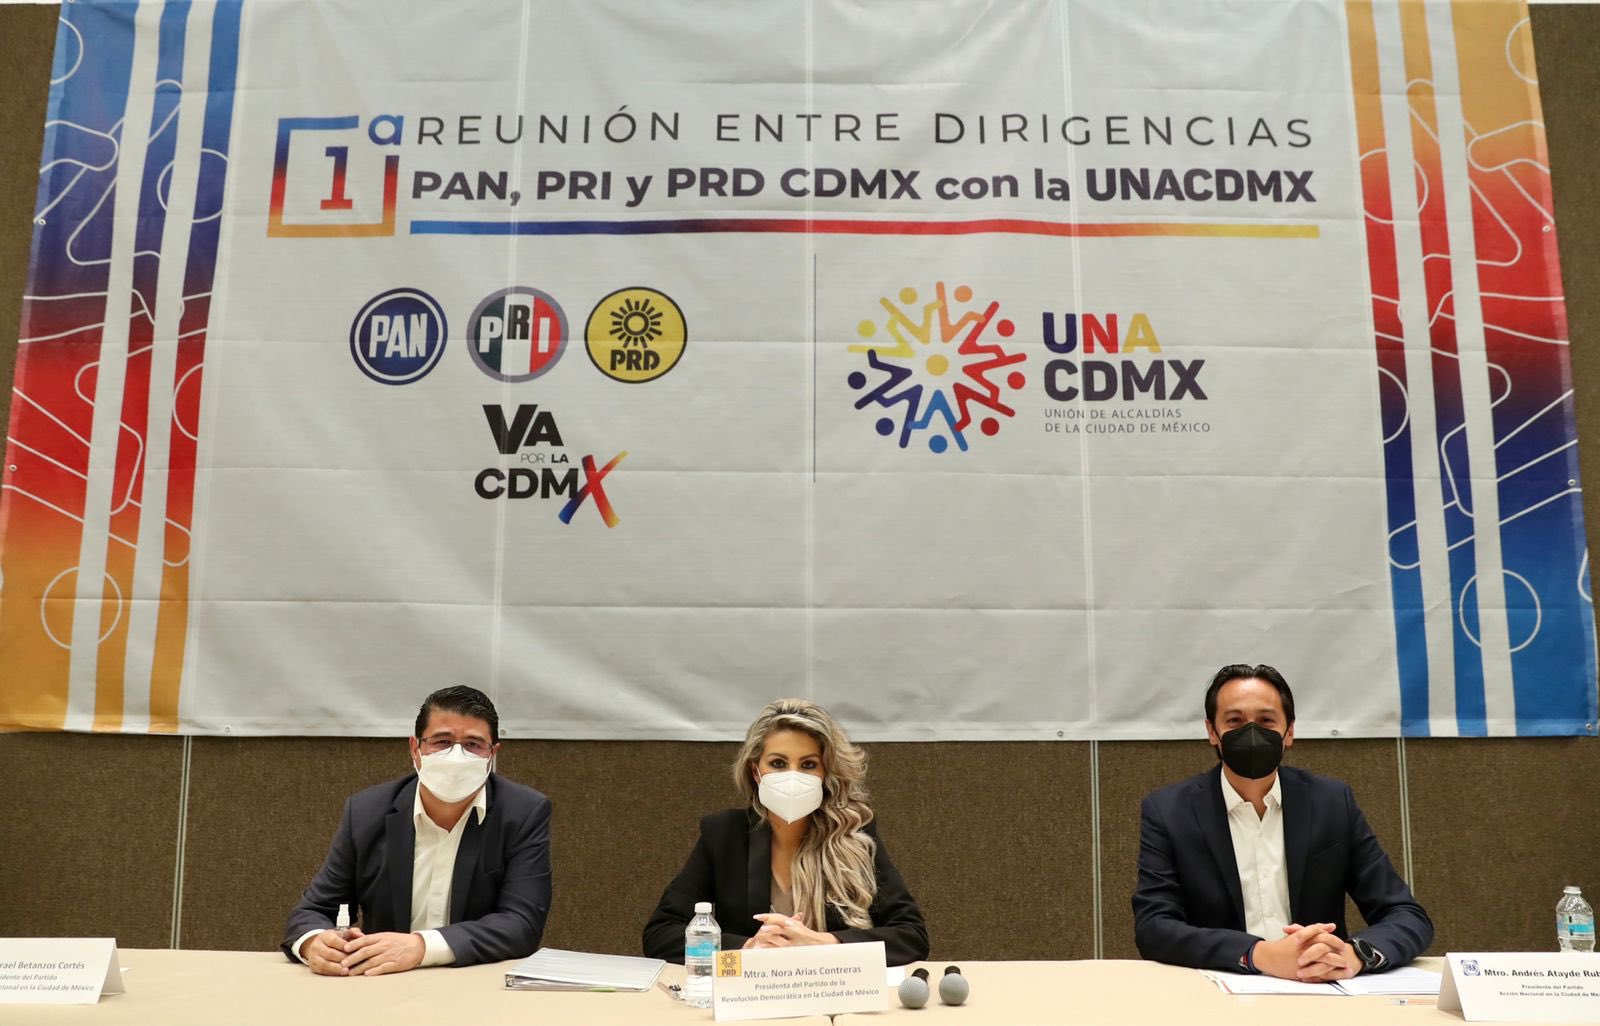 Dirigencias del PAN, PRI y PRD piden iniciar proceso de transición en alcaldías de la CDMX